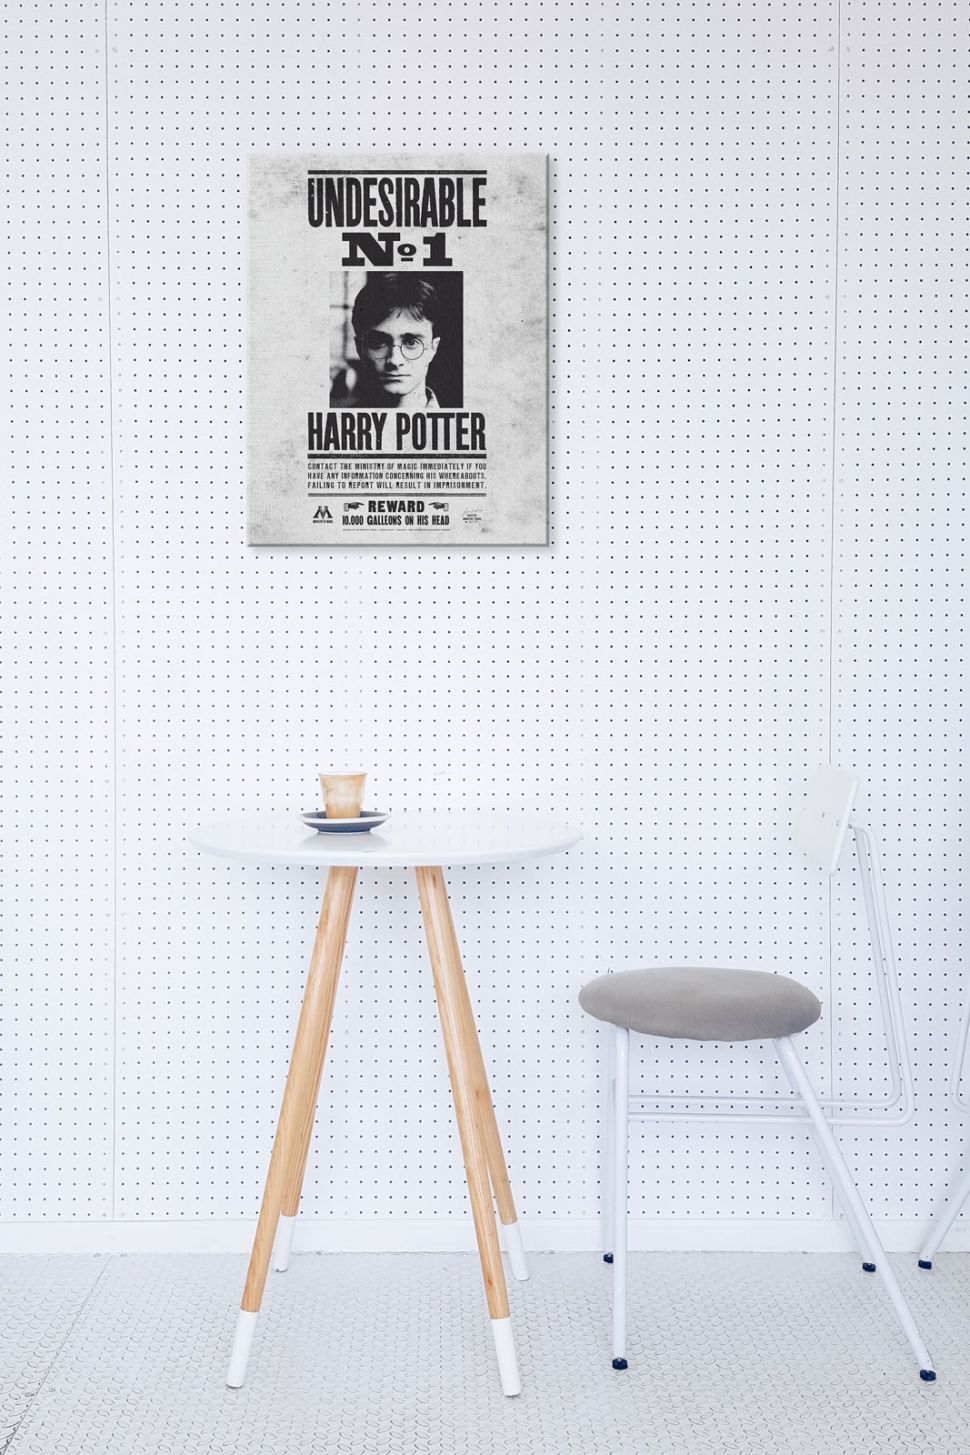 Aranżacja wnętrza z powieszonym na ścianie obrazem na płótnie przedstawiającym list gończy za Harrym Potterem